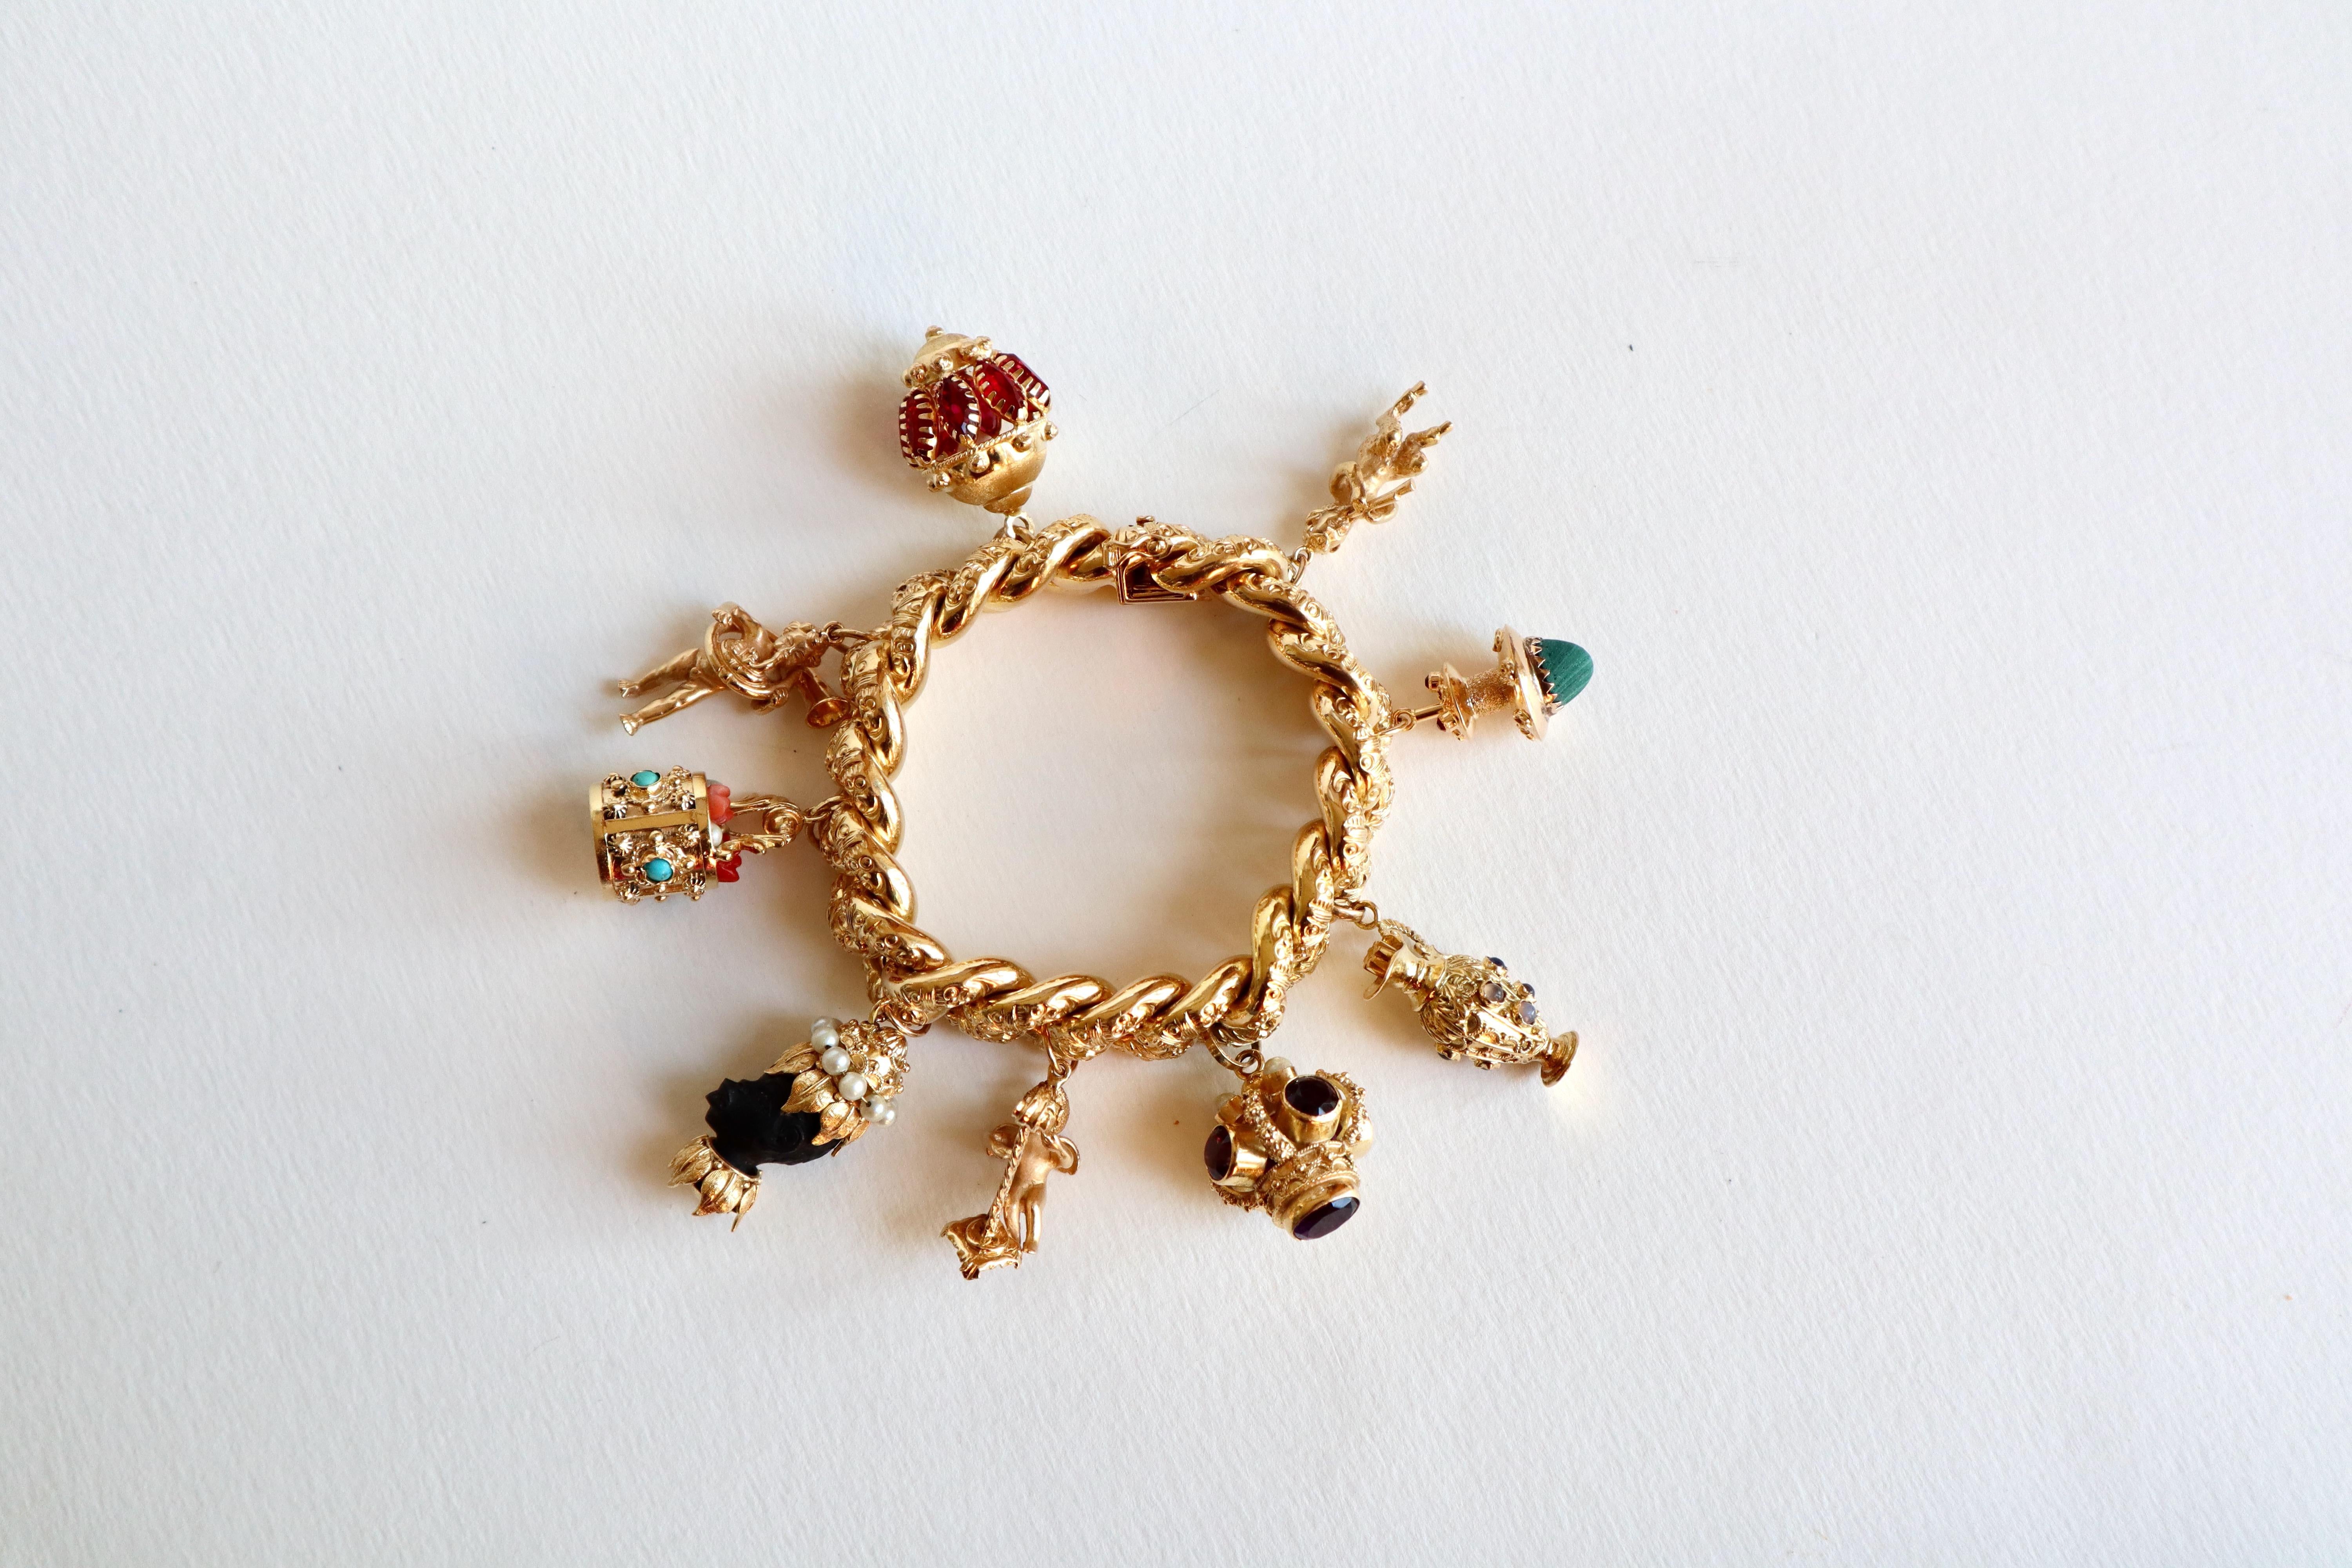 Bettelarmband aus Gelbgold mit 18 Karat Amethysten, Perlen und Korallen, feinen Steinen (Brillantschliff) im Angebot